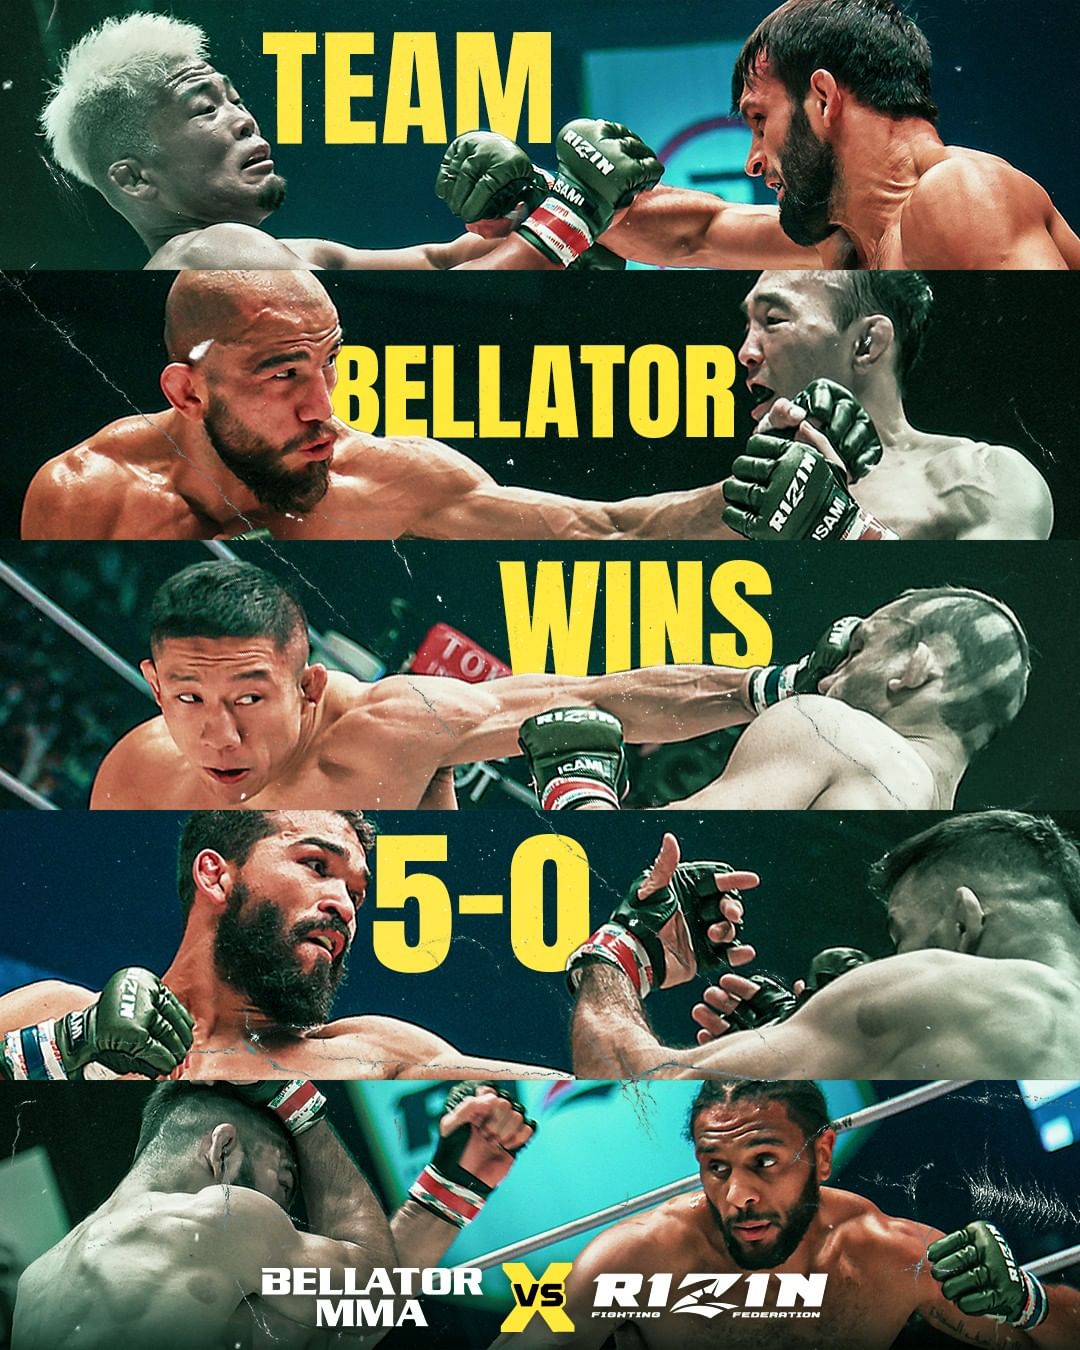 Bellator vs RIZIN 5-0